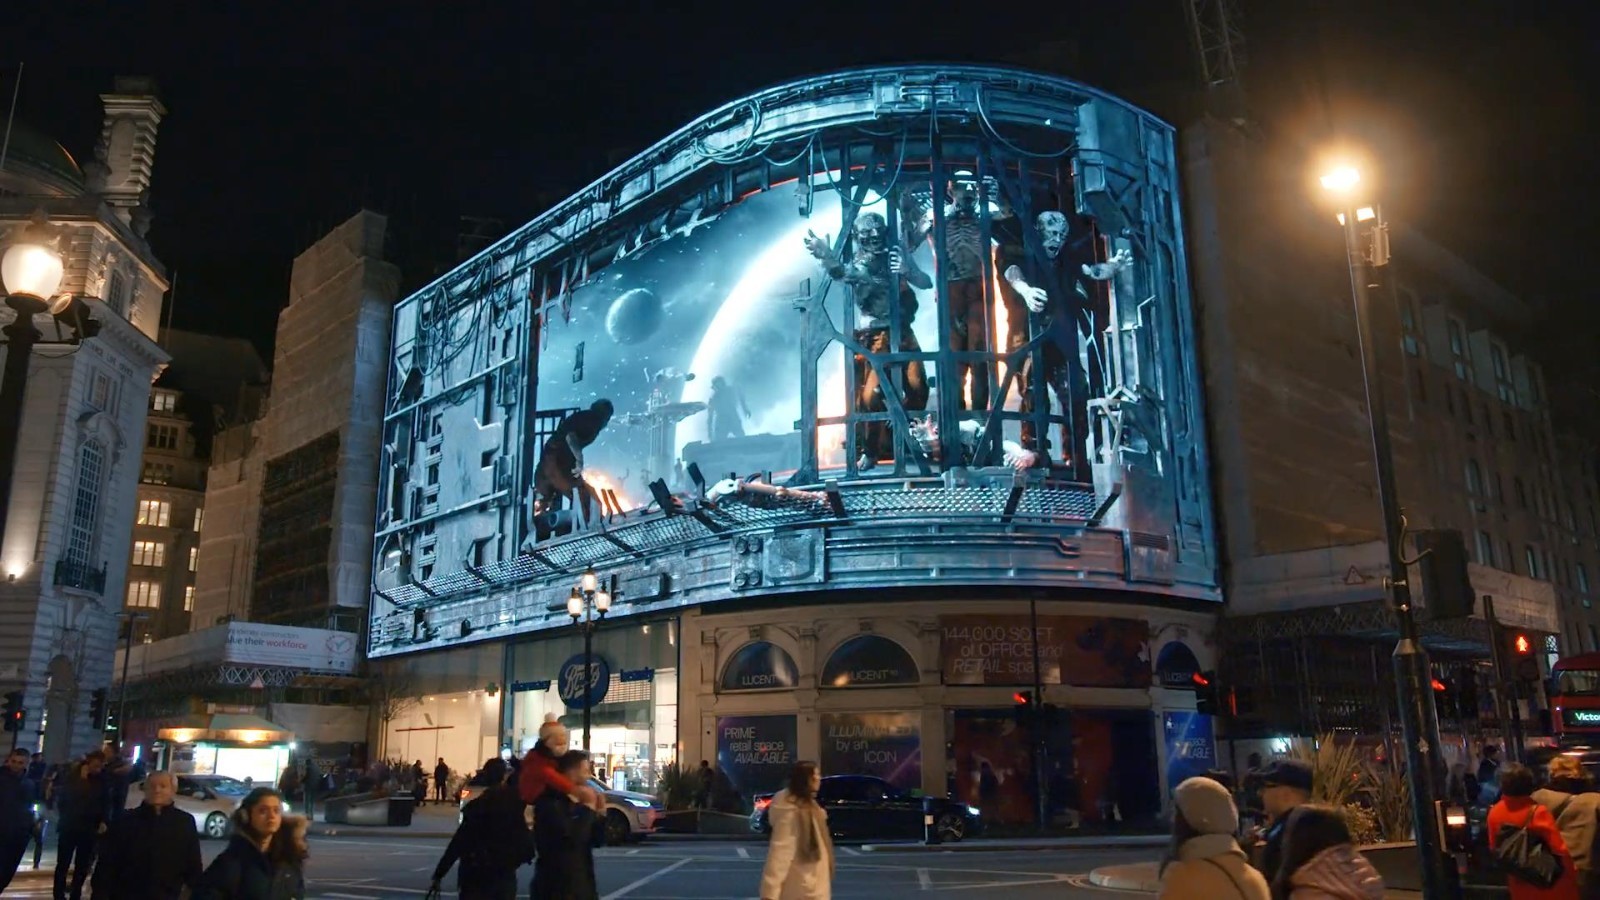 《木卫四协议》3D街头广告 怪物扑面而来路人吓尿-第5张